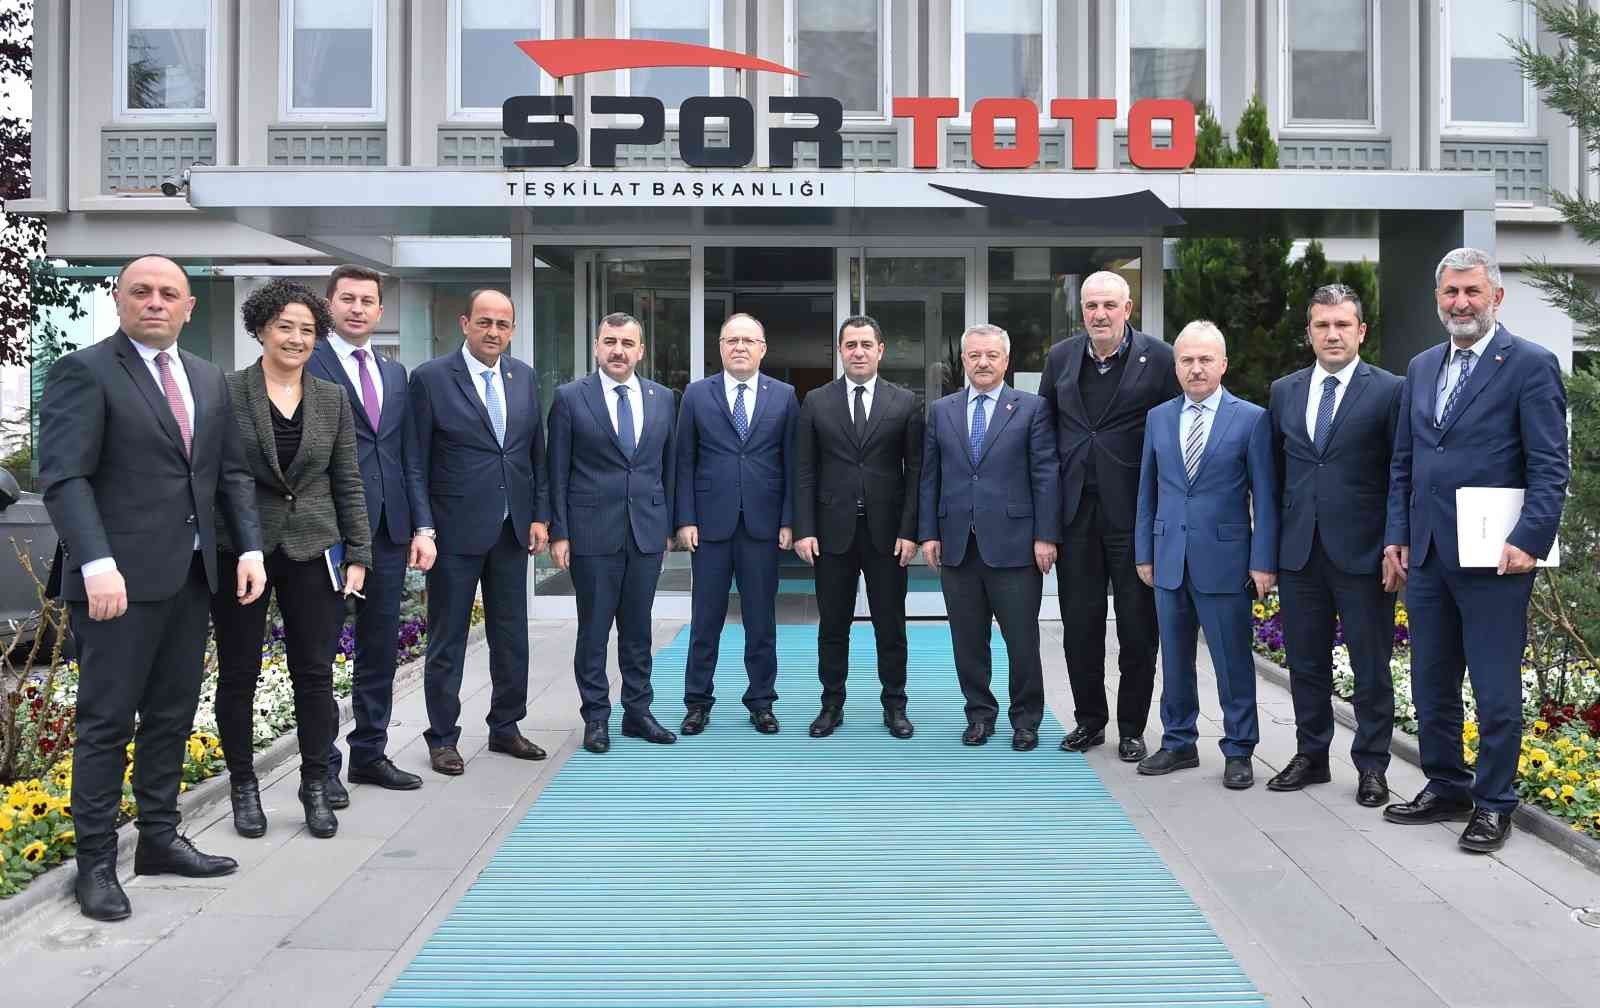 Zonguldak’ın spor yatırımları için imzalar atıldı #zonguldak